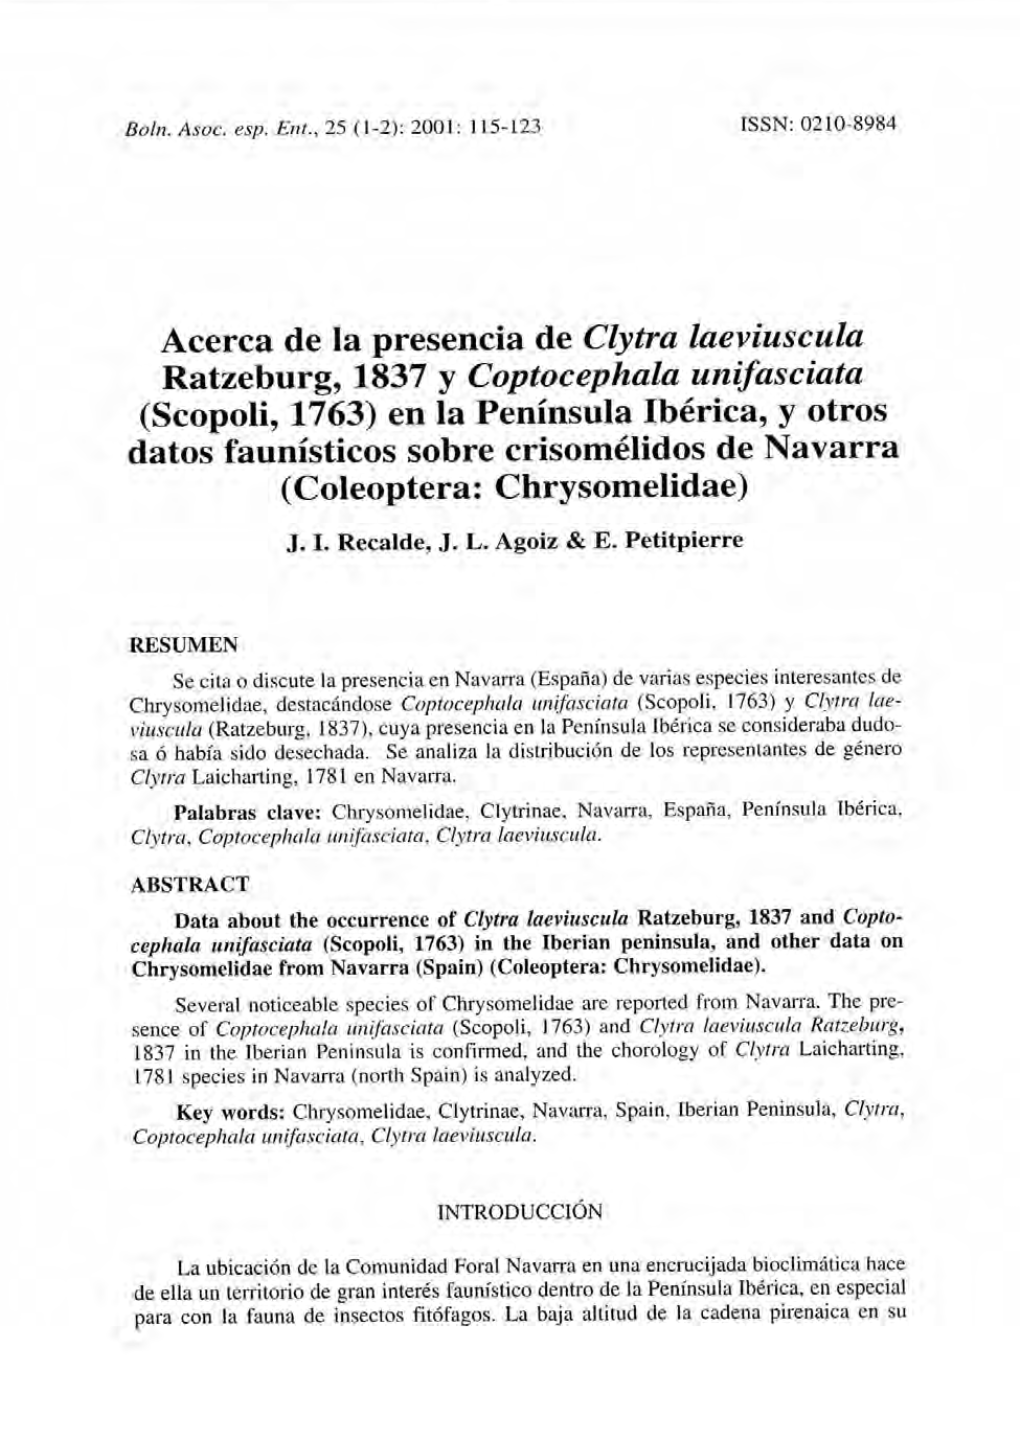 Acerca De La Presencia De Clytra Laeviuscula Ratzeburg, 1837 Y Coptocephala Unifasciata